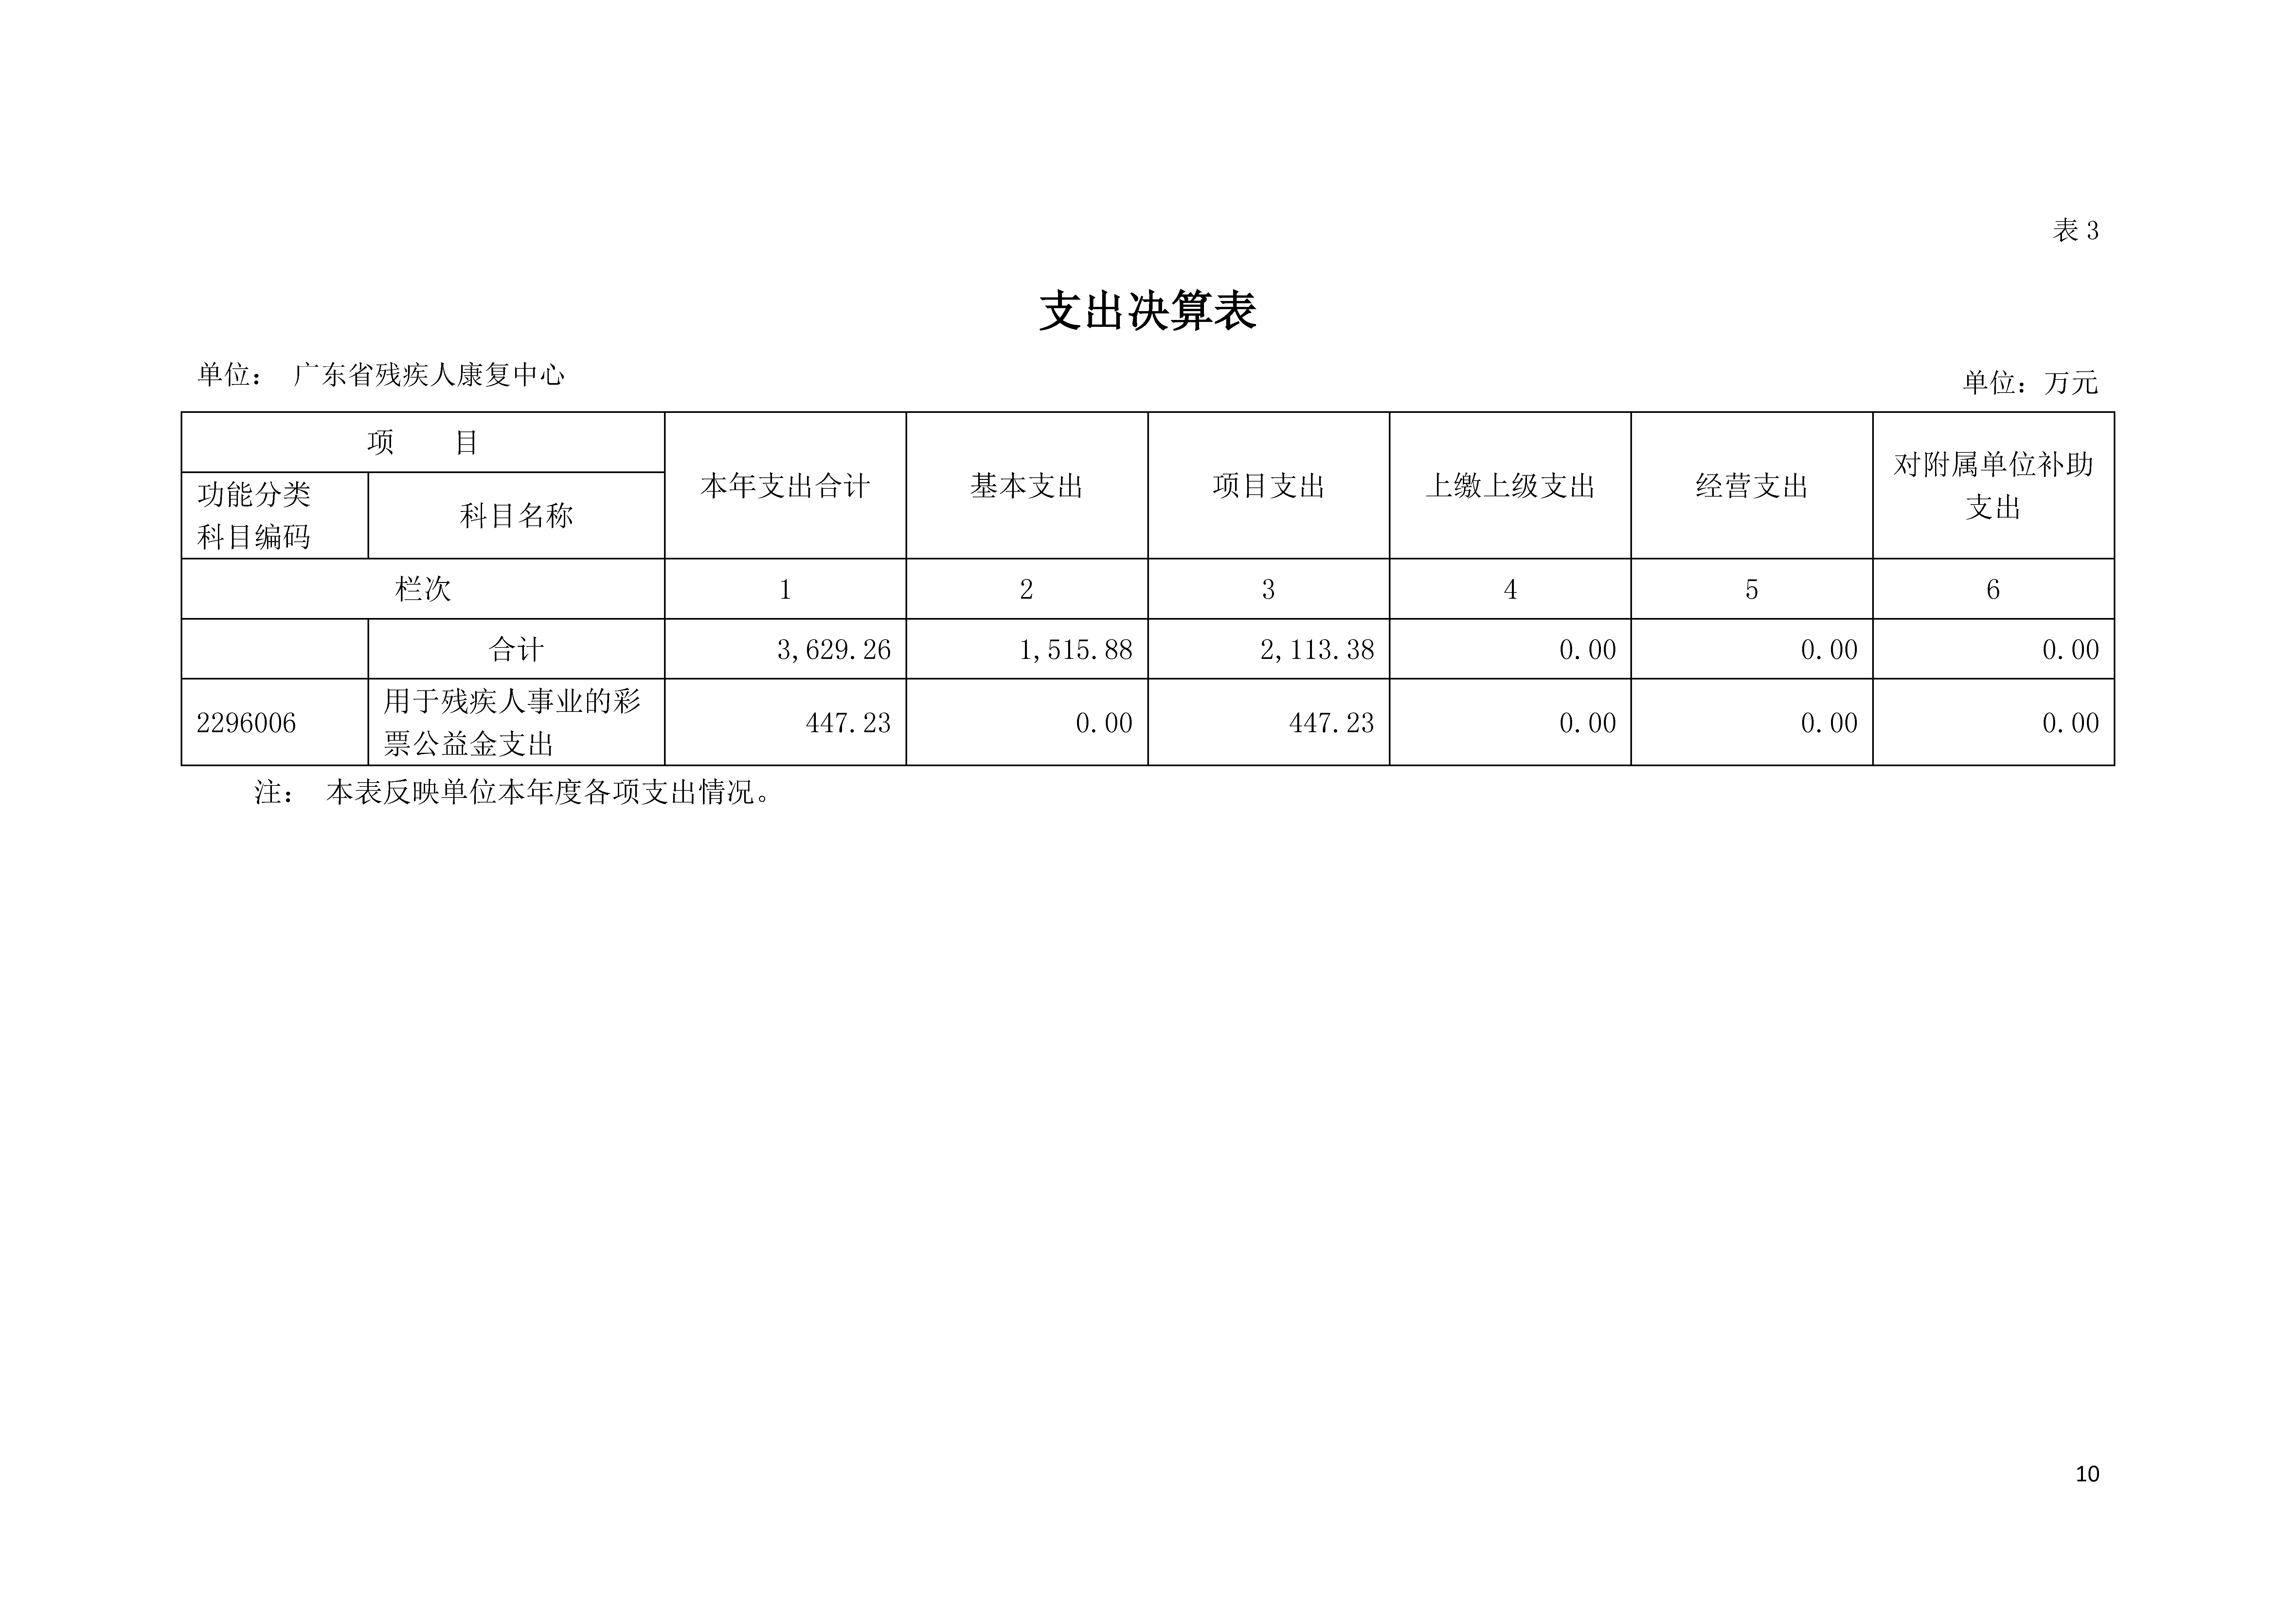 2020年广东省残疾人康复中心部门决算_页面_10.jpg